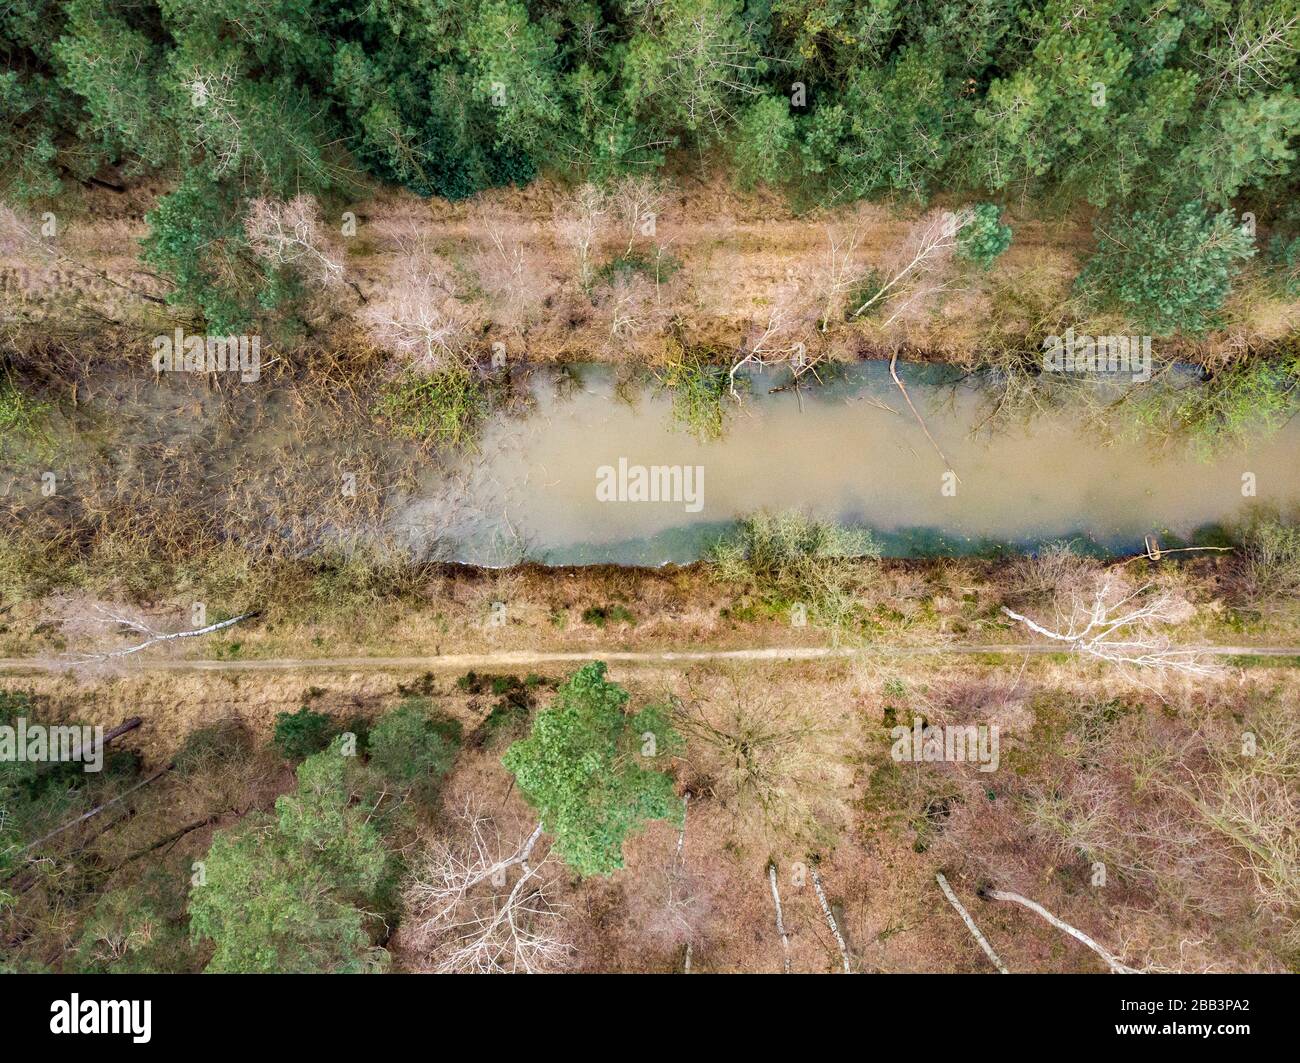 Tir de drone aérien, tout droit, d'une forêt avec rivière ou canal traversant au début du printemps. Lieu: Antitankgracht Kapellen. Édition créative. Banque D'Images